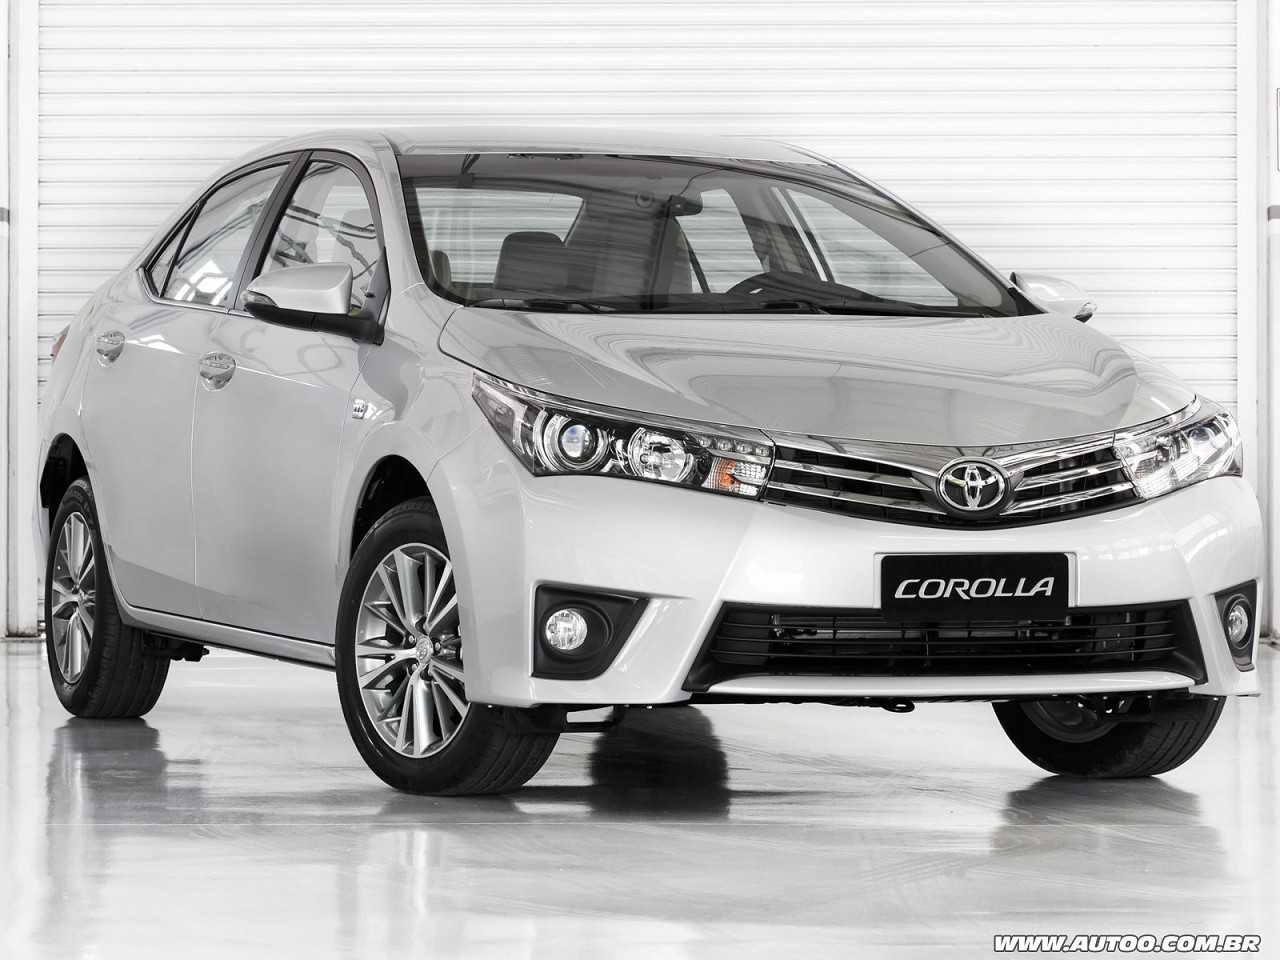 Por que o Toyota Corolla é mais caro que o Honda Civic no mercado de usados?